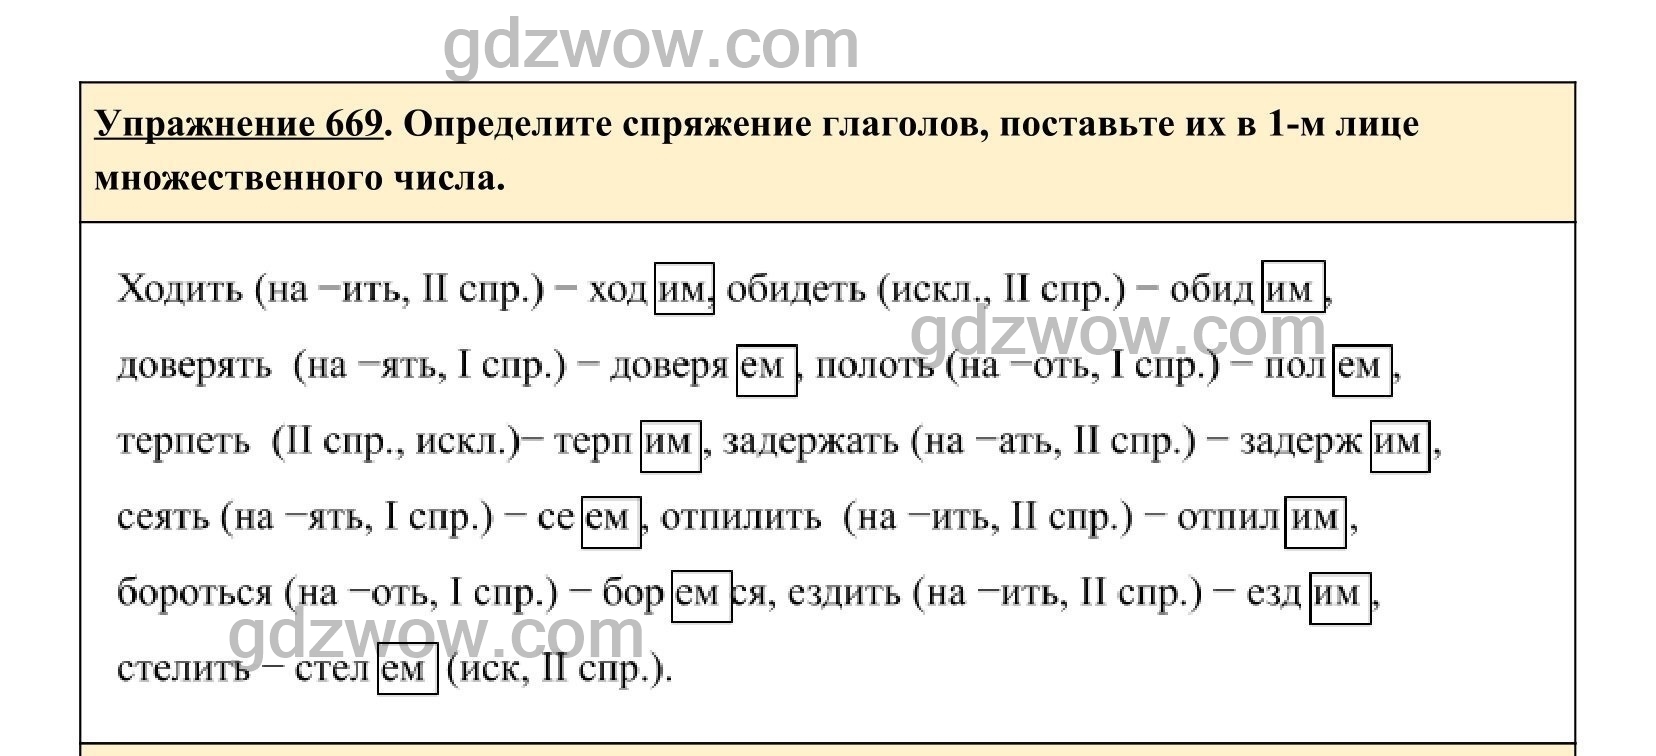 Русский язык пятый класс упражнение 669. Упражнение 712 по русскому языку 5 класс. Русский упражнение 669. Русский язык 5 класс 669.